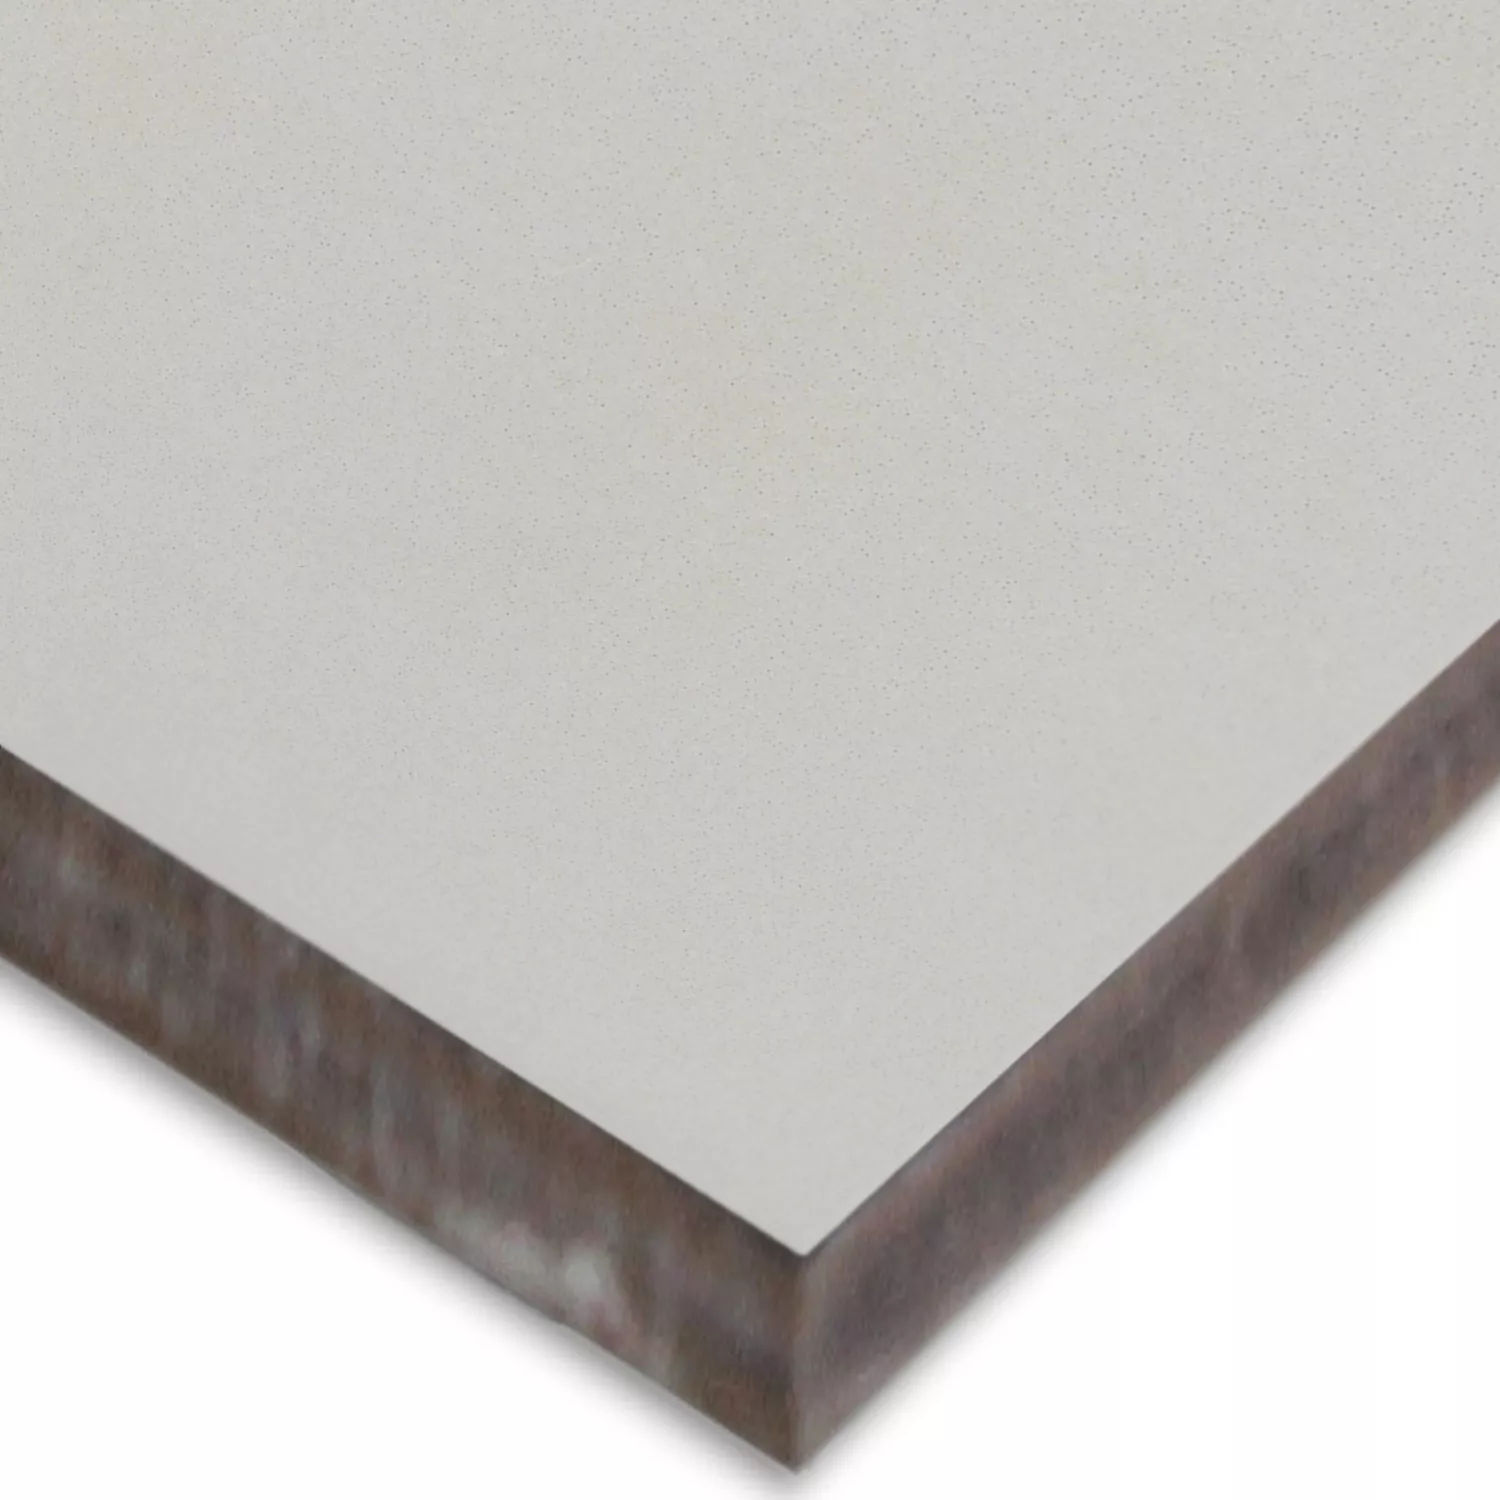 Sample Cement Tiles Optic Gotik Basic Tile White 22,3x22,3cm